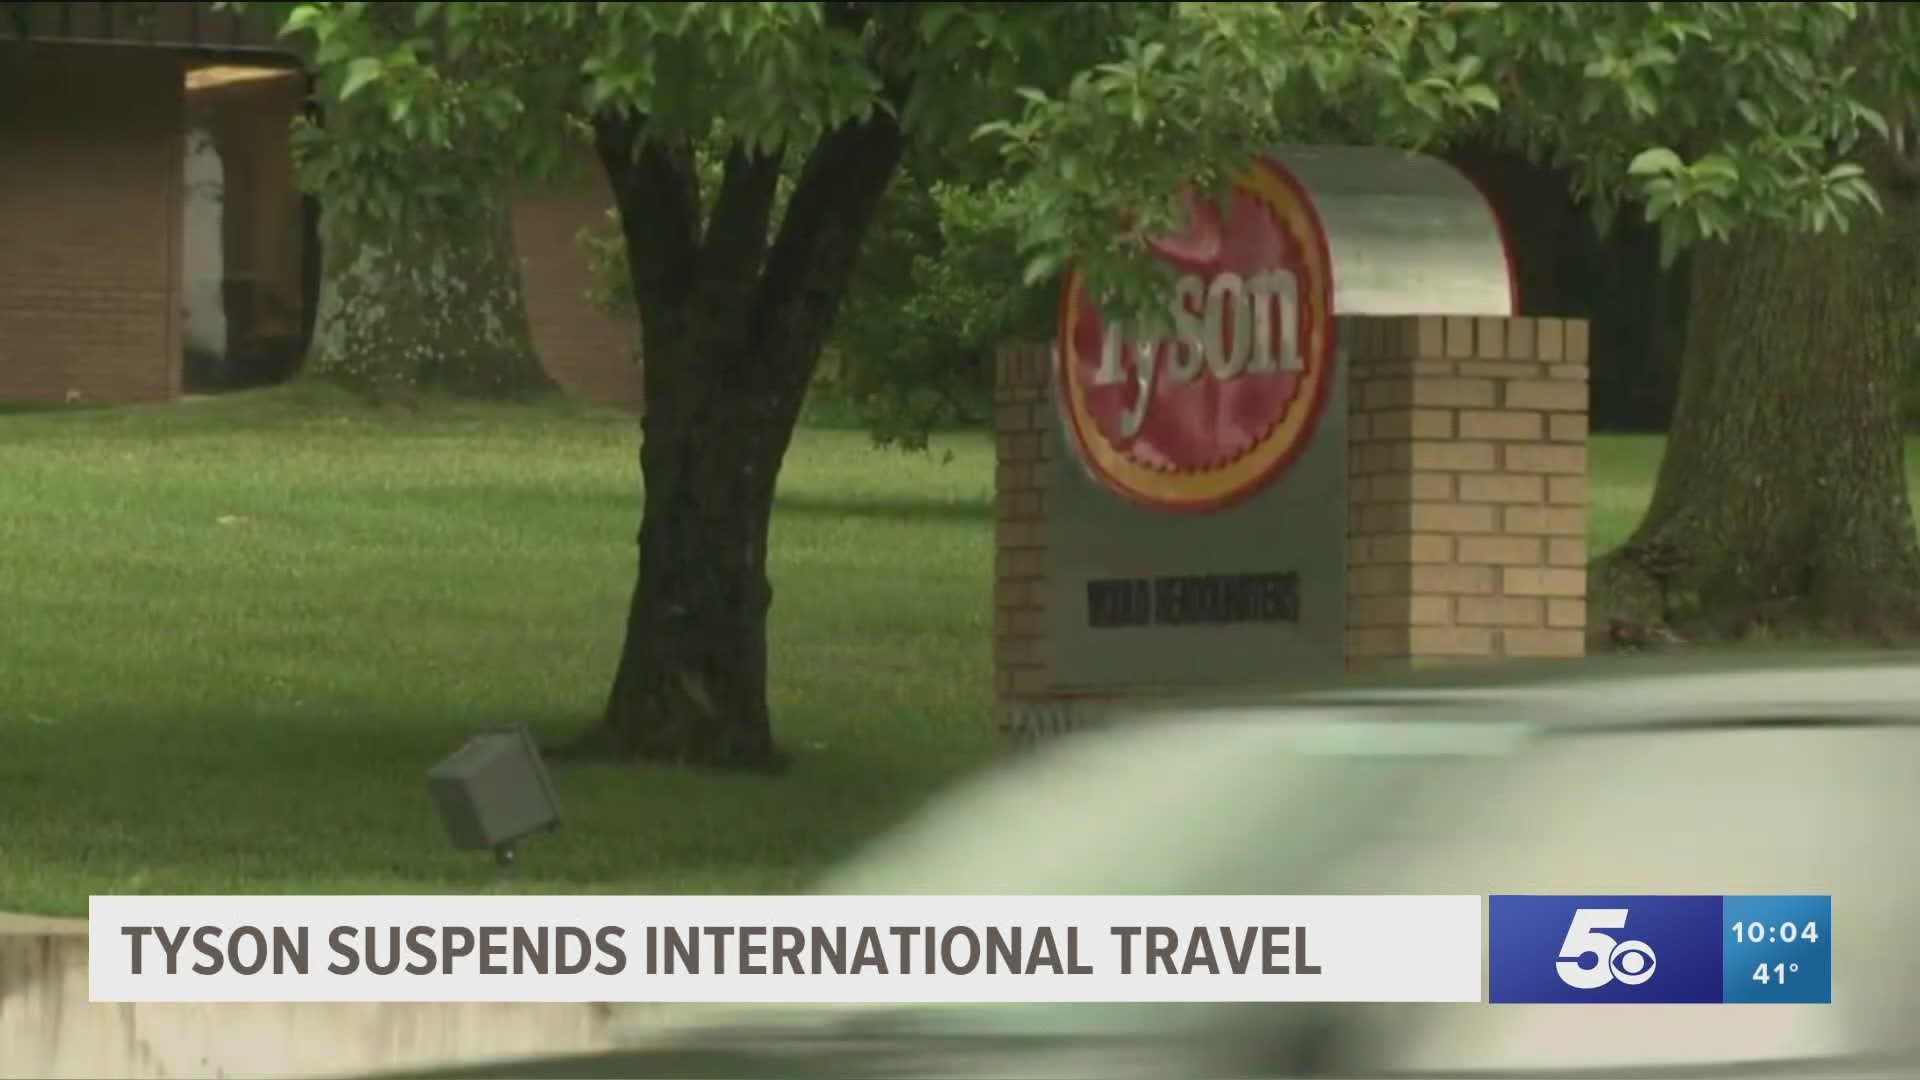 Tyson suspends international travel